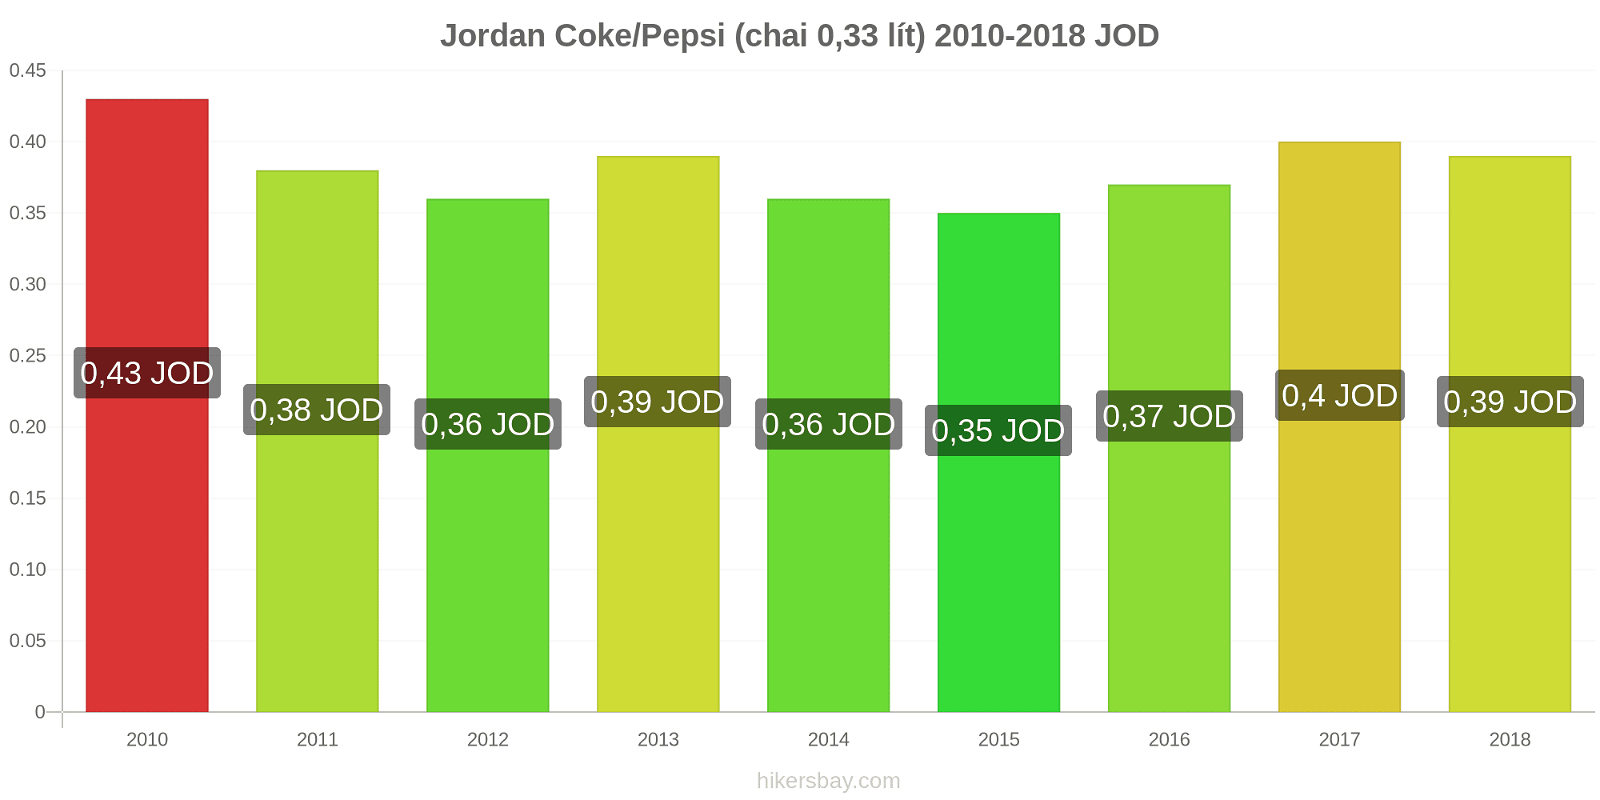 Jordan thay đổi giá cả Coca-Cola/Pepsi (chai 0.33 lít) hikersbay.com